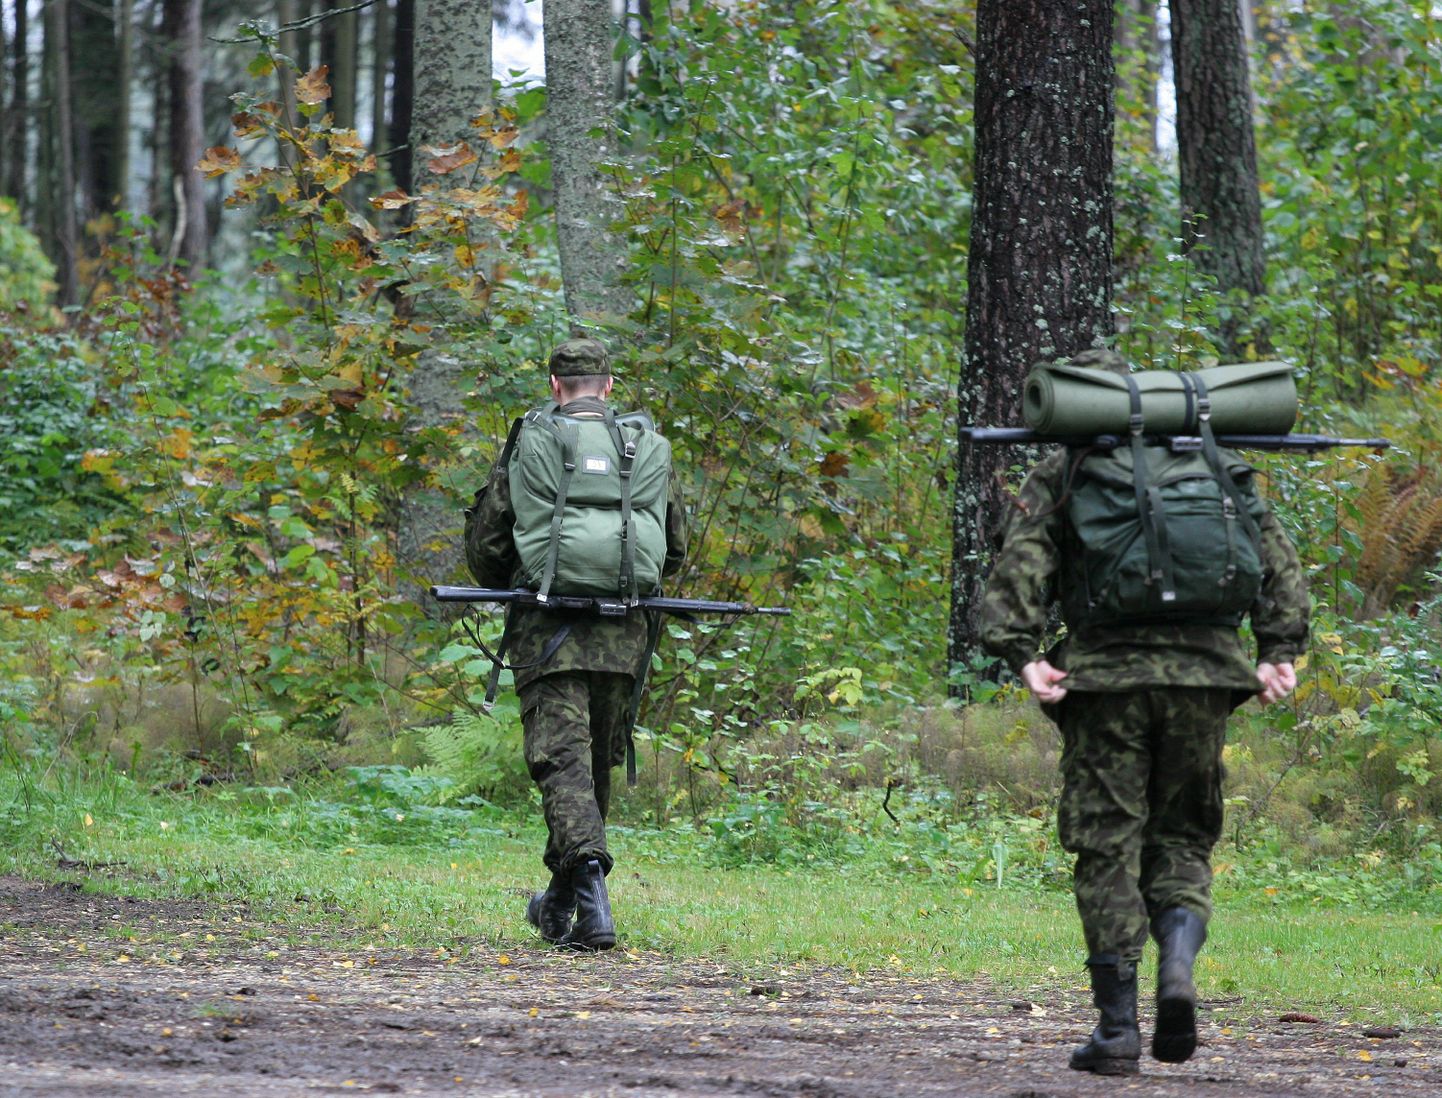 Kaitseliidu Sakala malev kutsub kõiki 24. septembril traditsioonilisele rännakule «Rebaseretk».